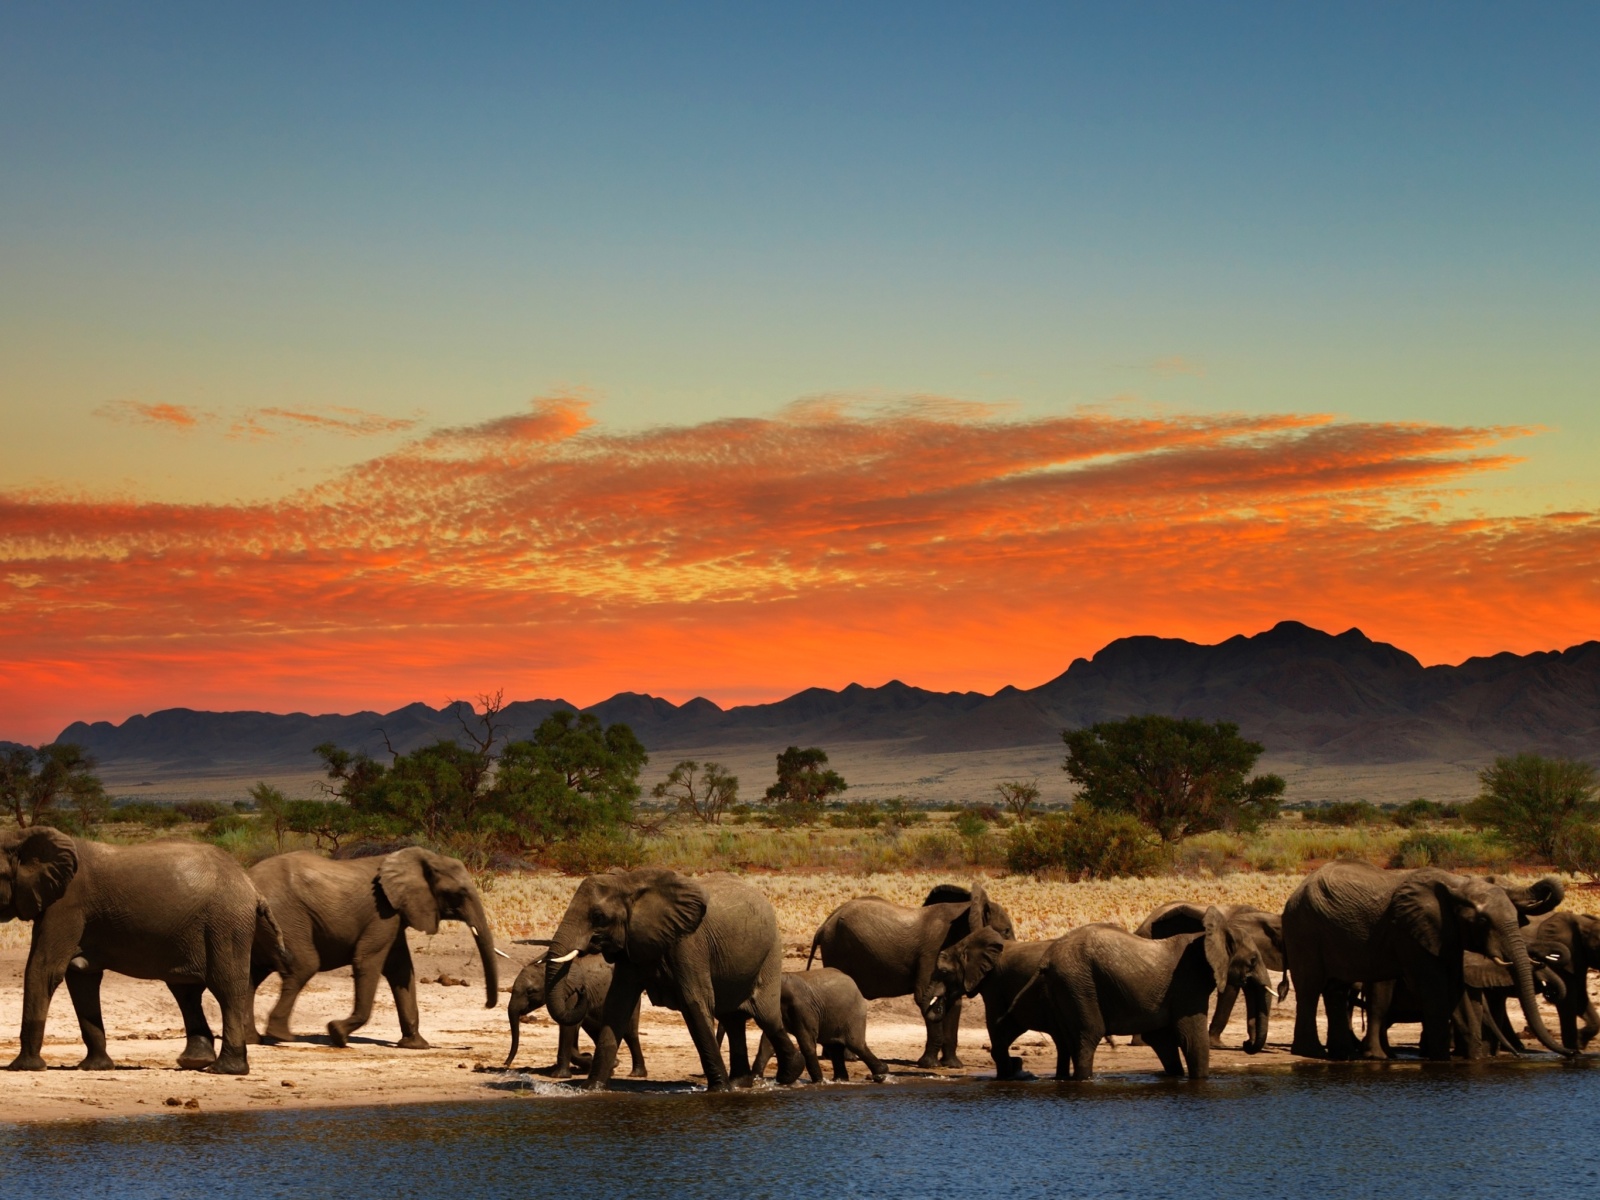 Herd of elephants Safari wallpaper 1600x1200